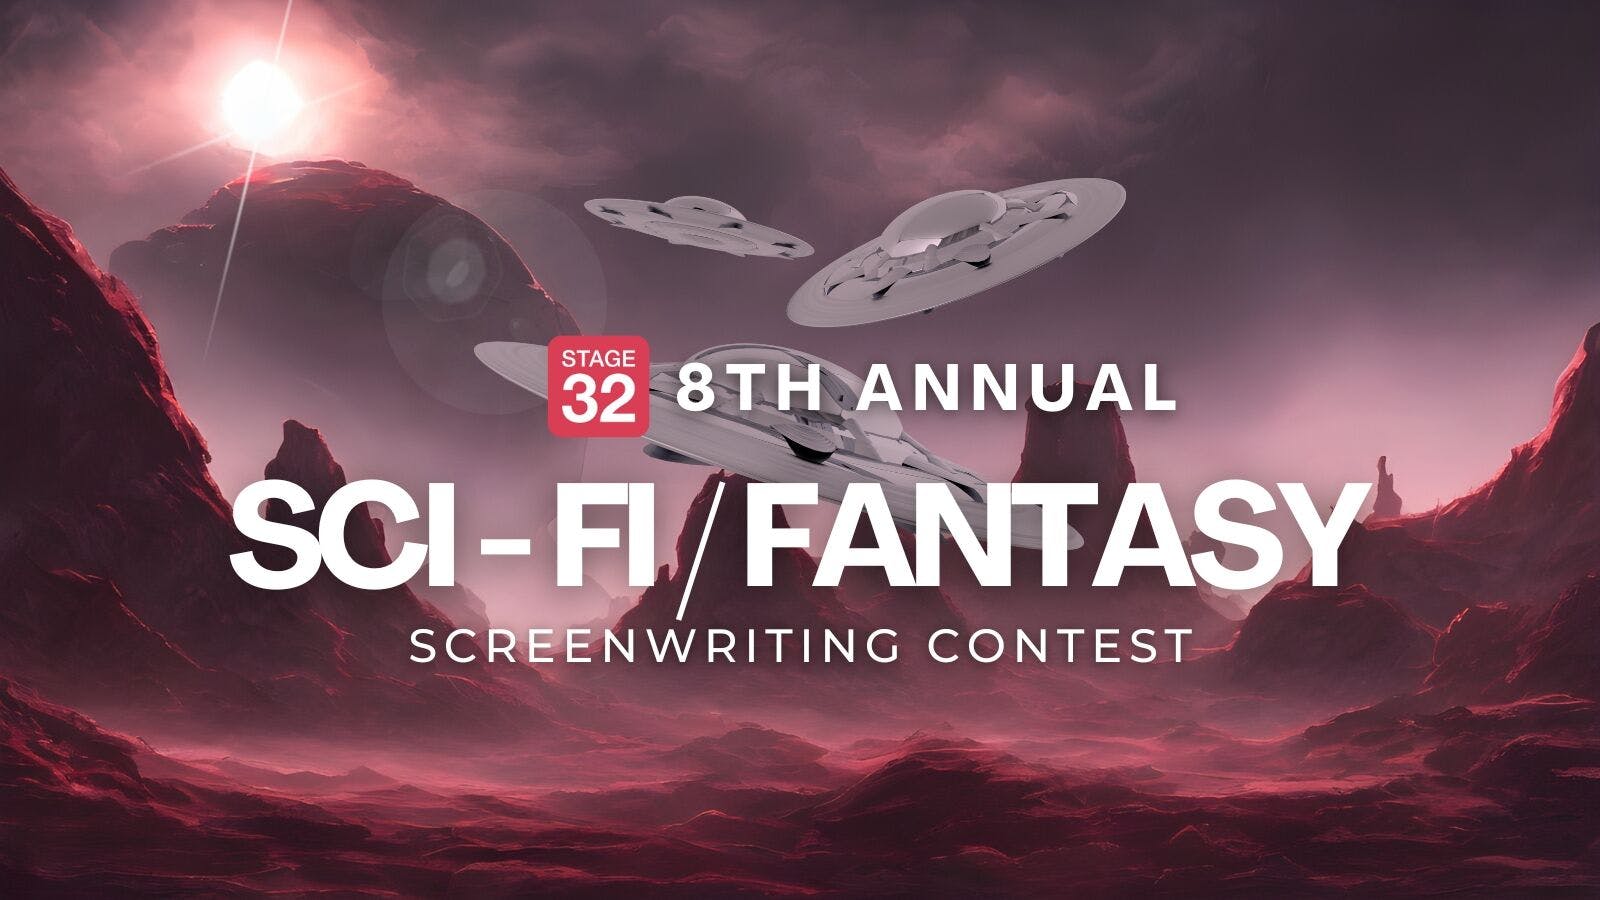 Announcing the 8th Annual Sci-Fi/Fantasy Screenwriting Contest